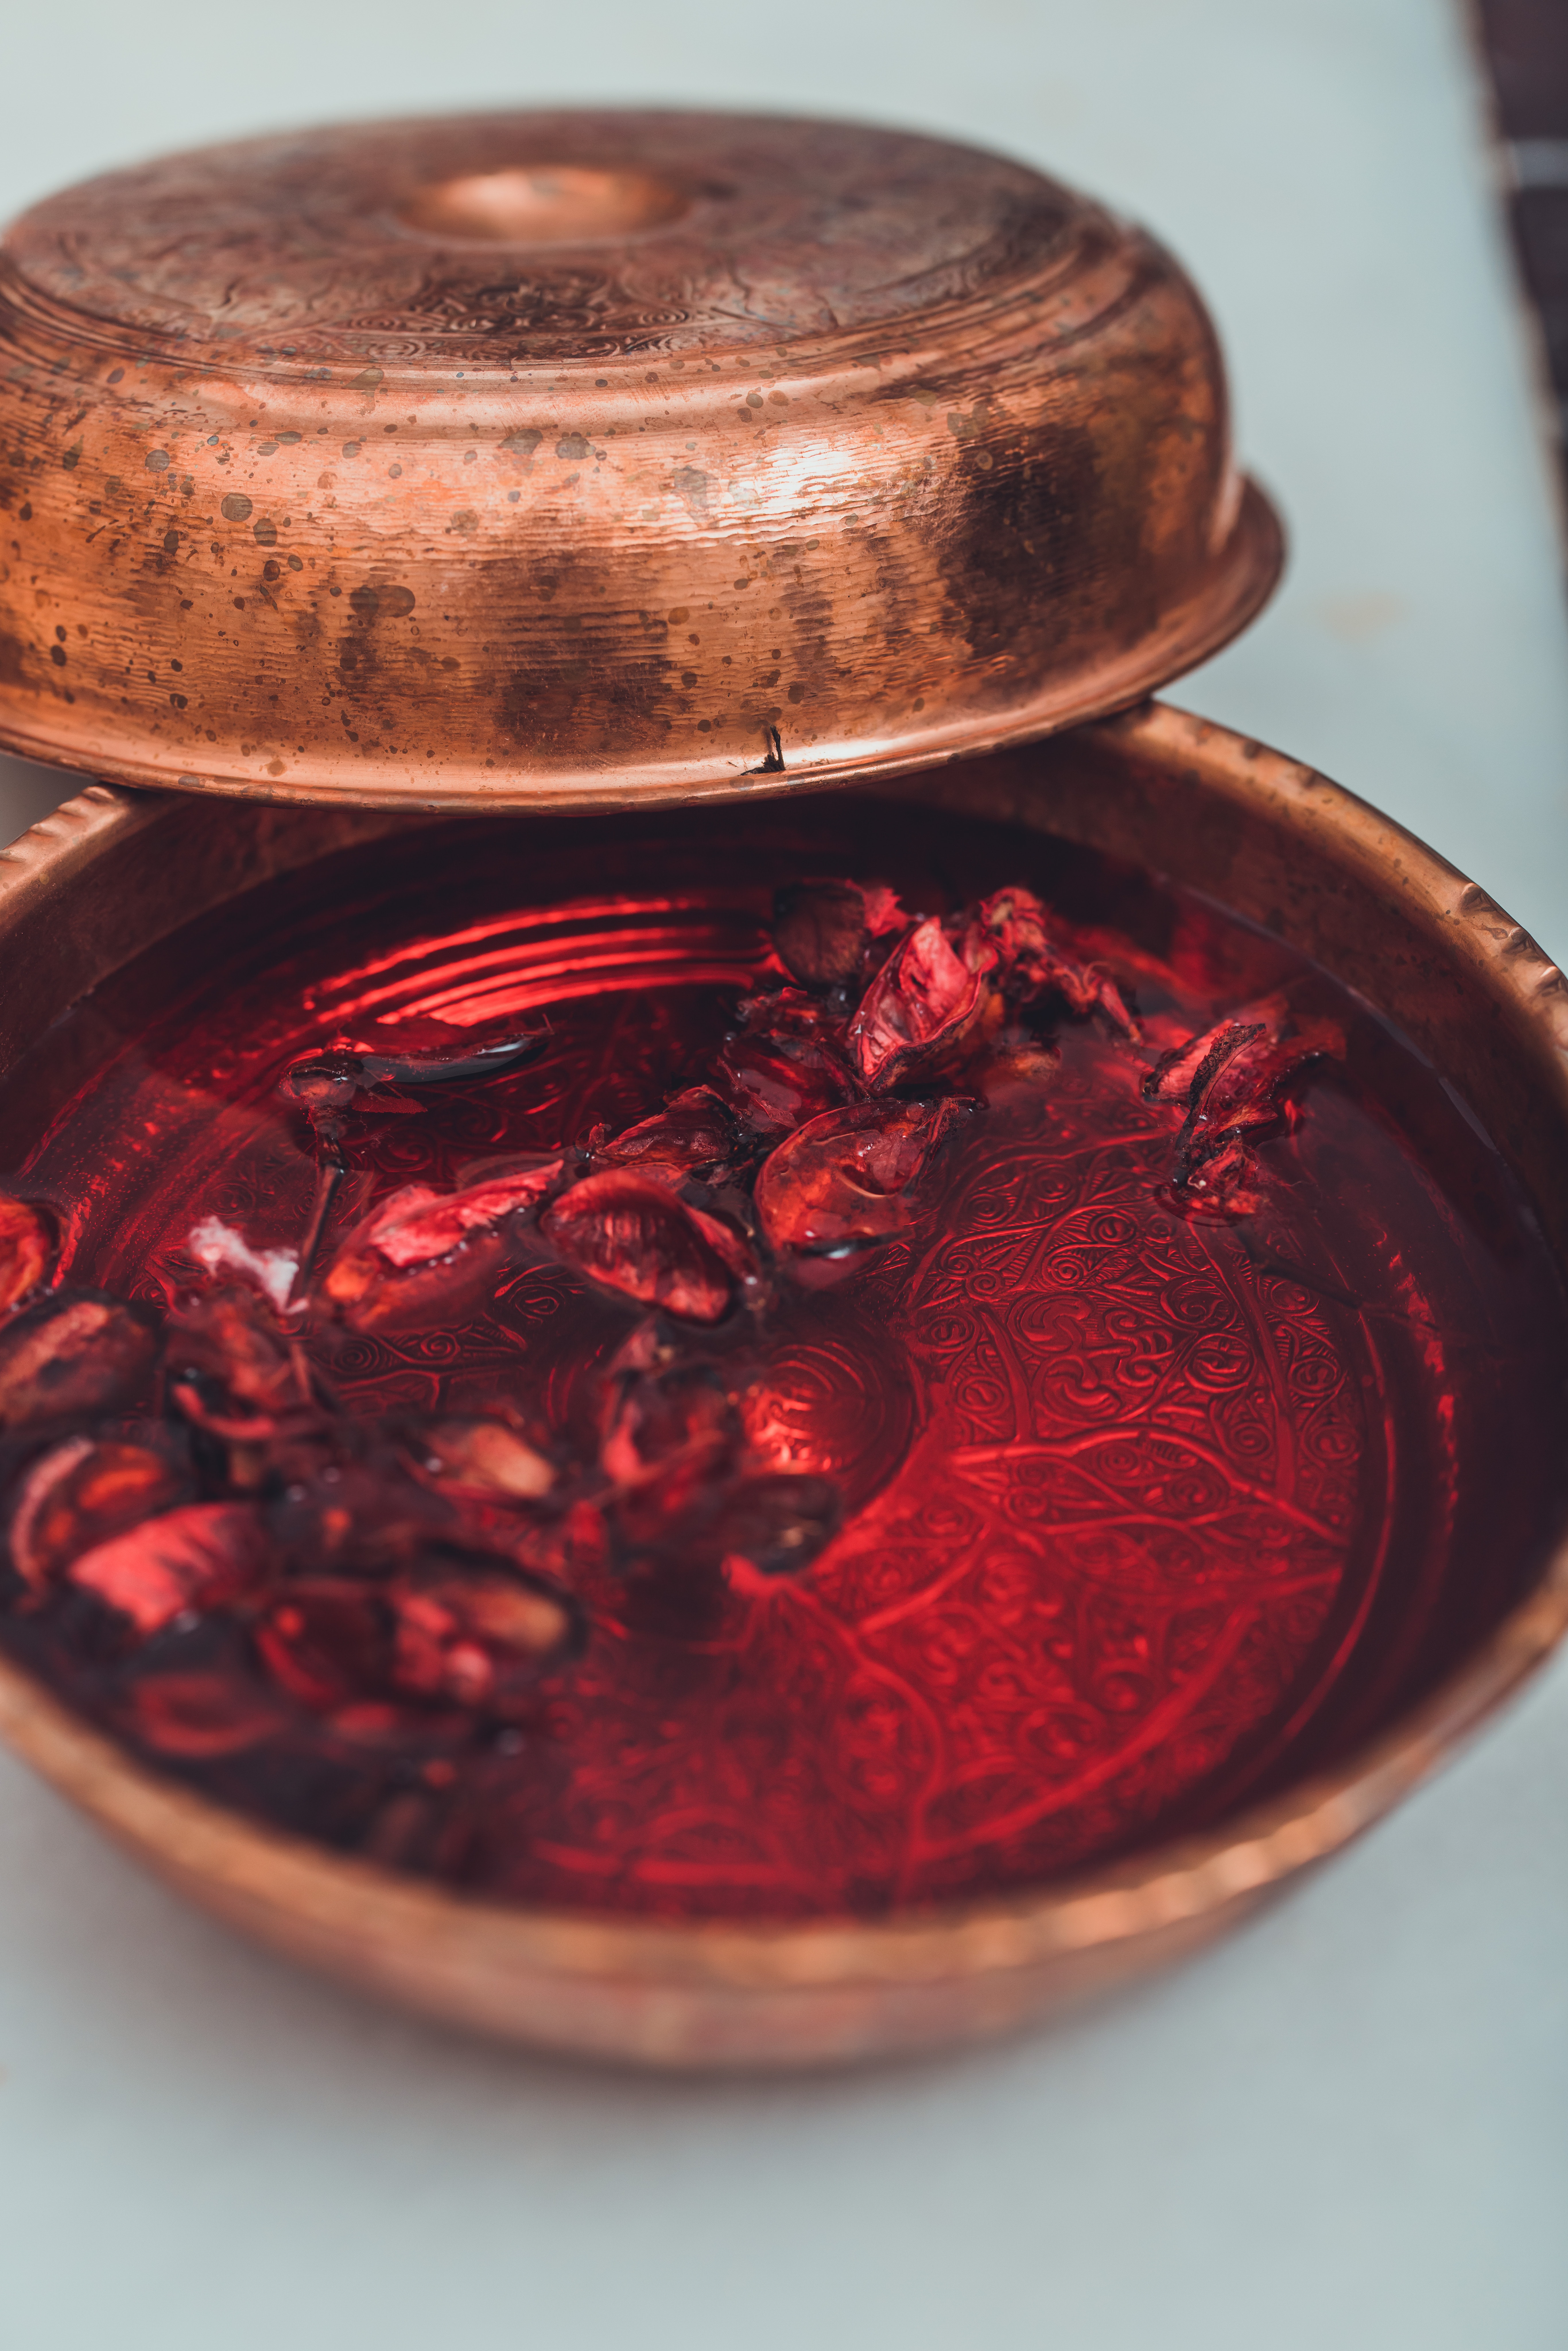 Récipient de hammam turque et oriental rempli d'eau et de fleurs de rose - Accessoire de bain traditionnel - Médina de Tanger